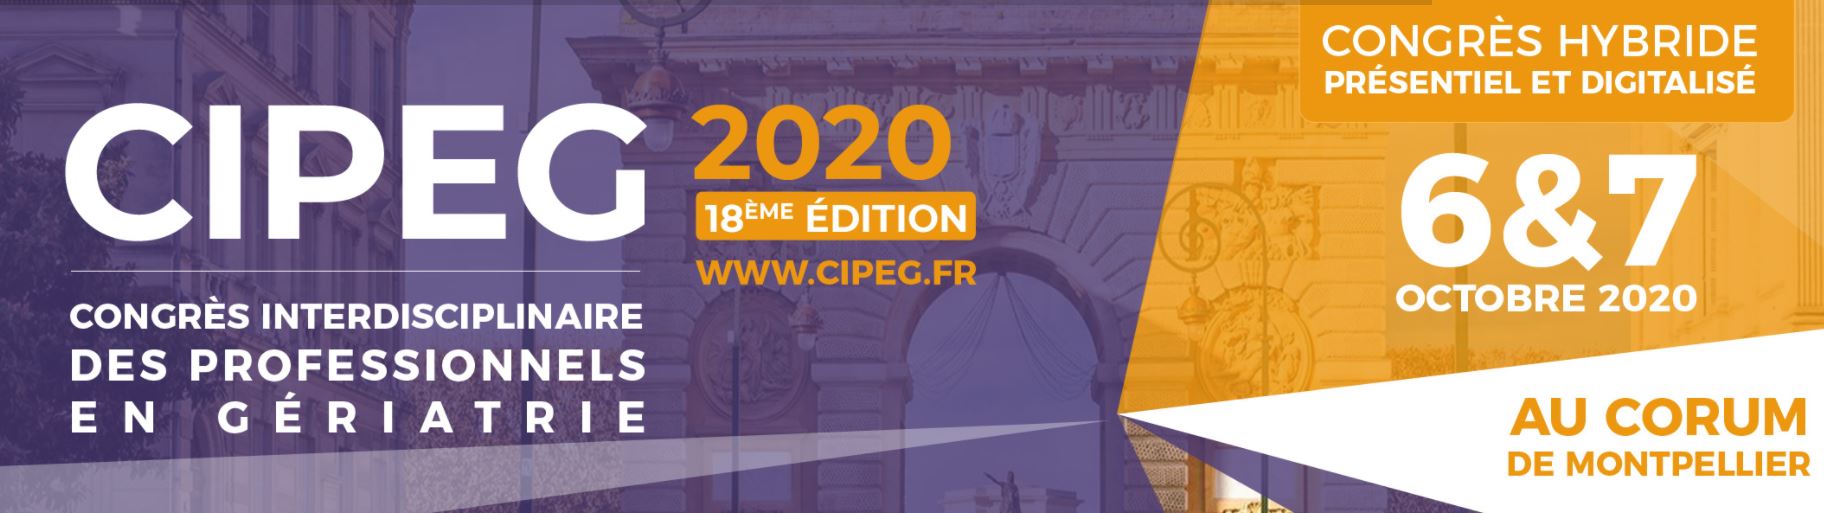 18th Interdisciplinary Congress of Professionals in Geriatrics CIPEG 2020